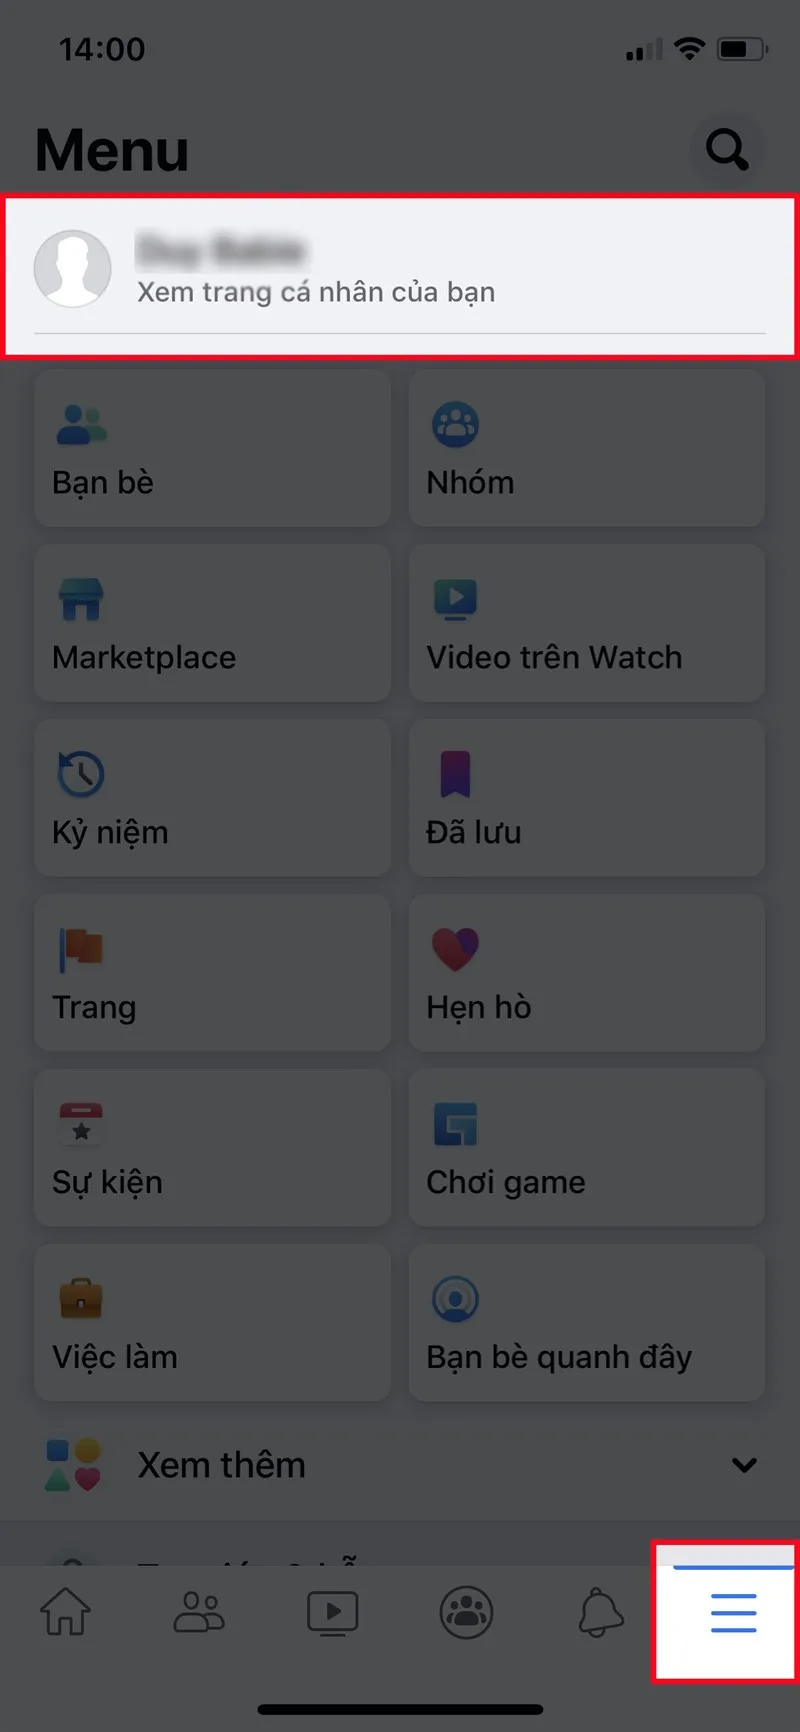 Mở ứng dụng Facebook, nhấn vào biểu tượng 3 dấu gạch ở góc dưới bên phải  Nhấn vào trang cá nhân của bạn. (Đối với iOS)Đối với Android, nhấn vào biểu tượng 3 dấu gạch ở góc trên bên phải  Nhấn vào trang cá nhân của bạn